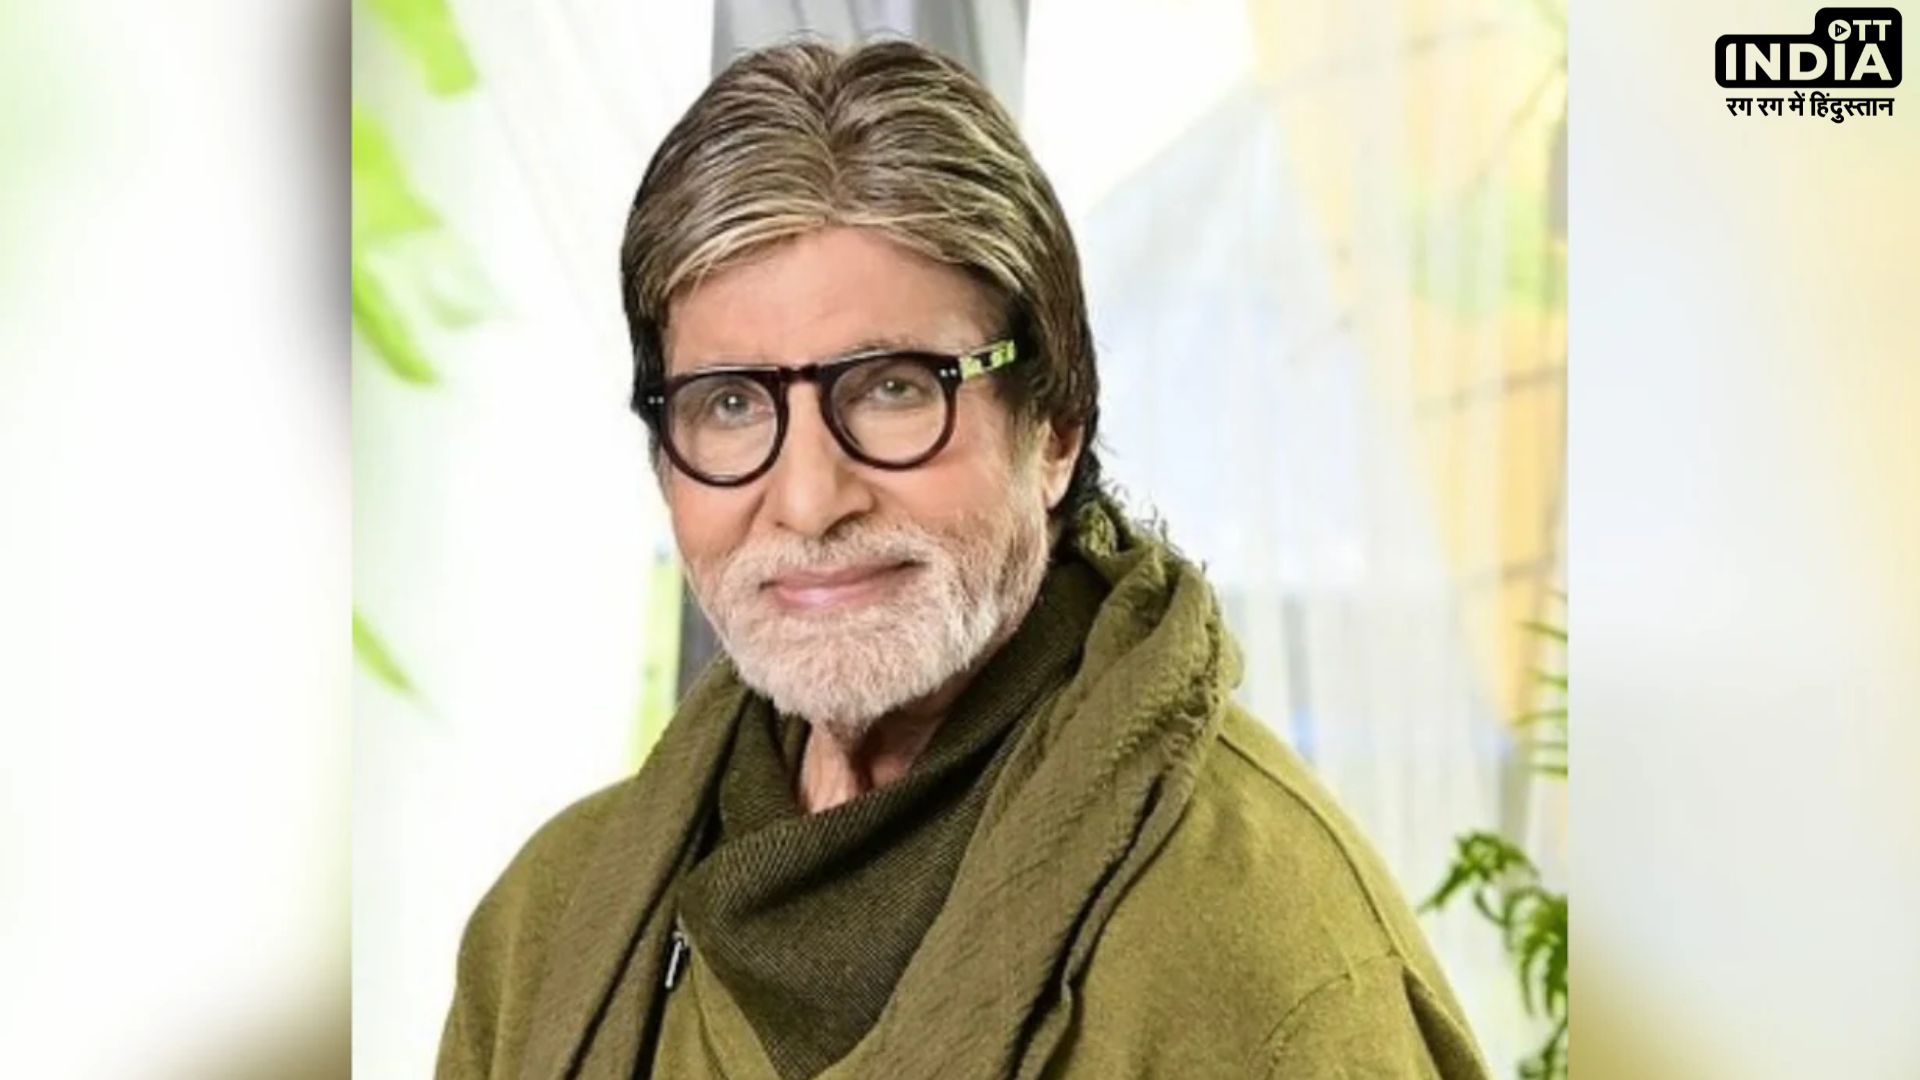 Amitabh Bachchan Hospitalized: 81 साल की उम्र में​ बिग बी की हुई एंजियोप्लास्टी,पैर में खून का जम गया था थक्का